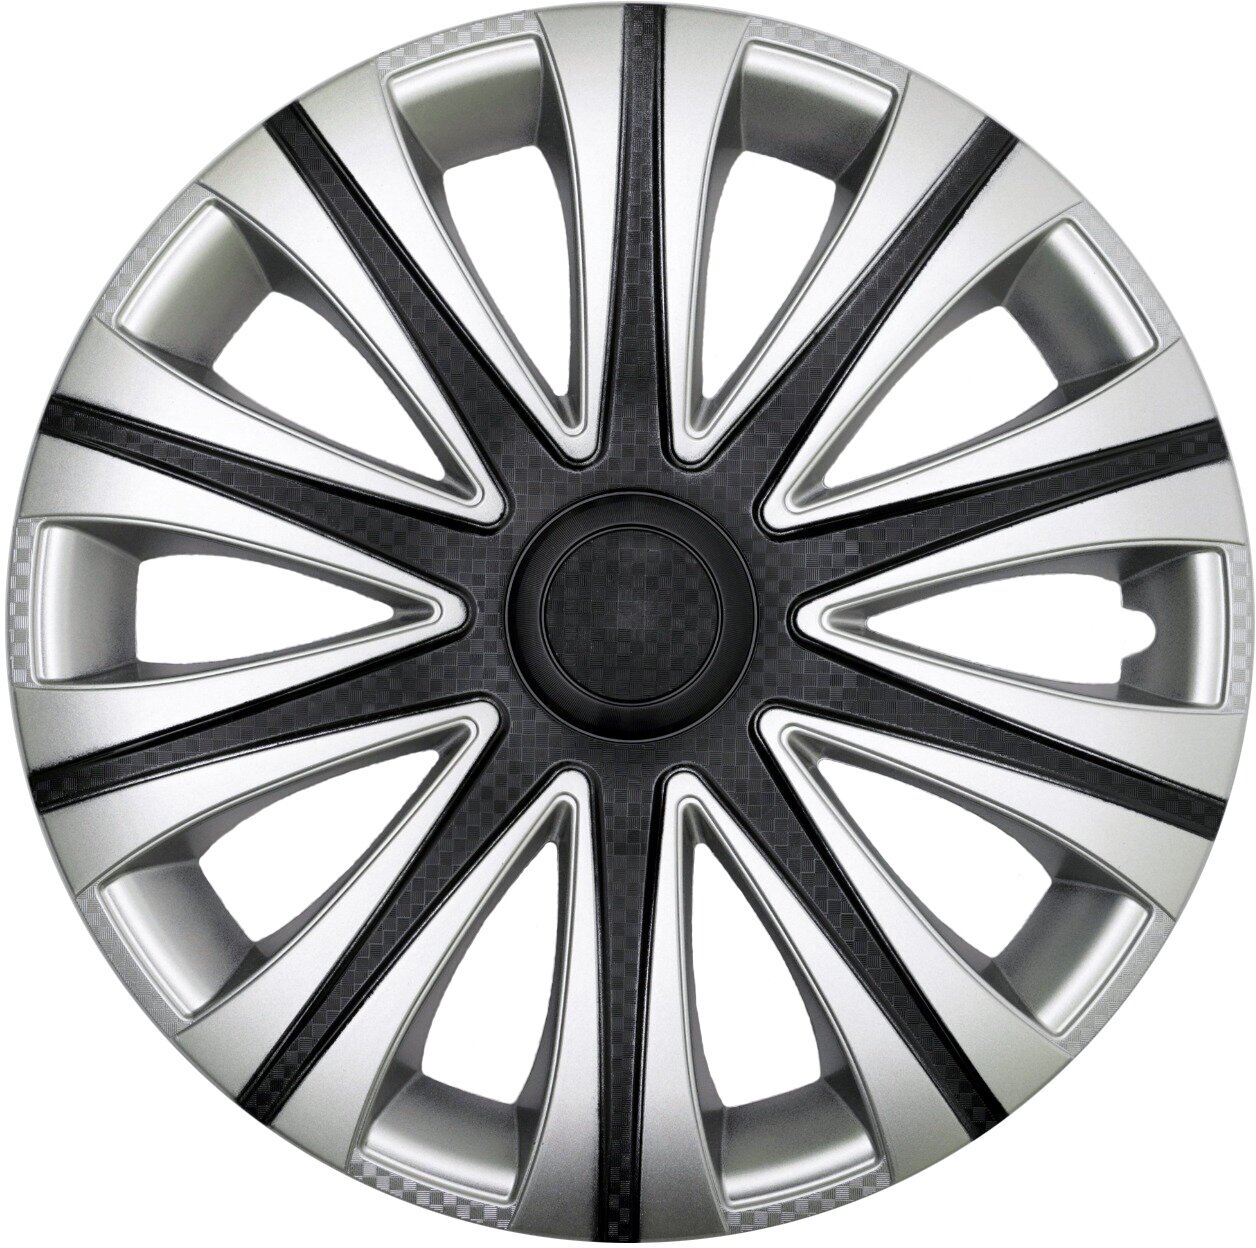 Колпаки R15 4шт на колеса авто МАЙ SUPER BLACK р15 на диски радиус 15 дюймов легковой авто цвет серый серебристый черный карбон.